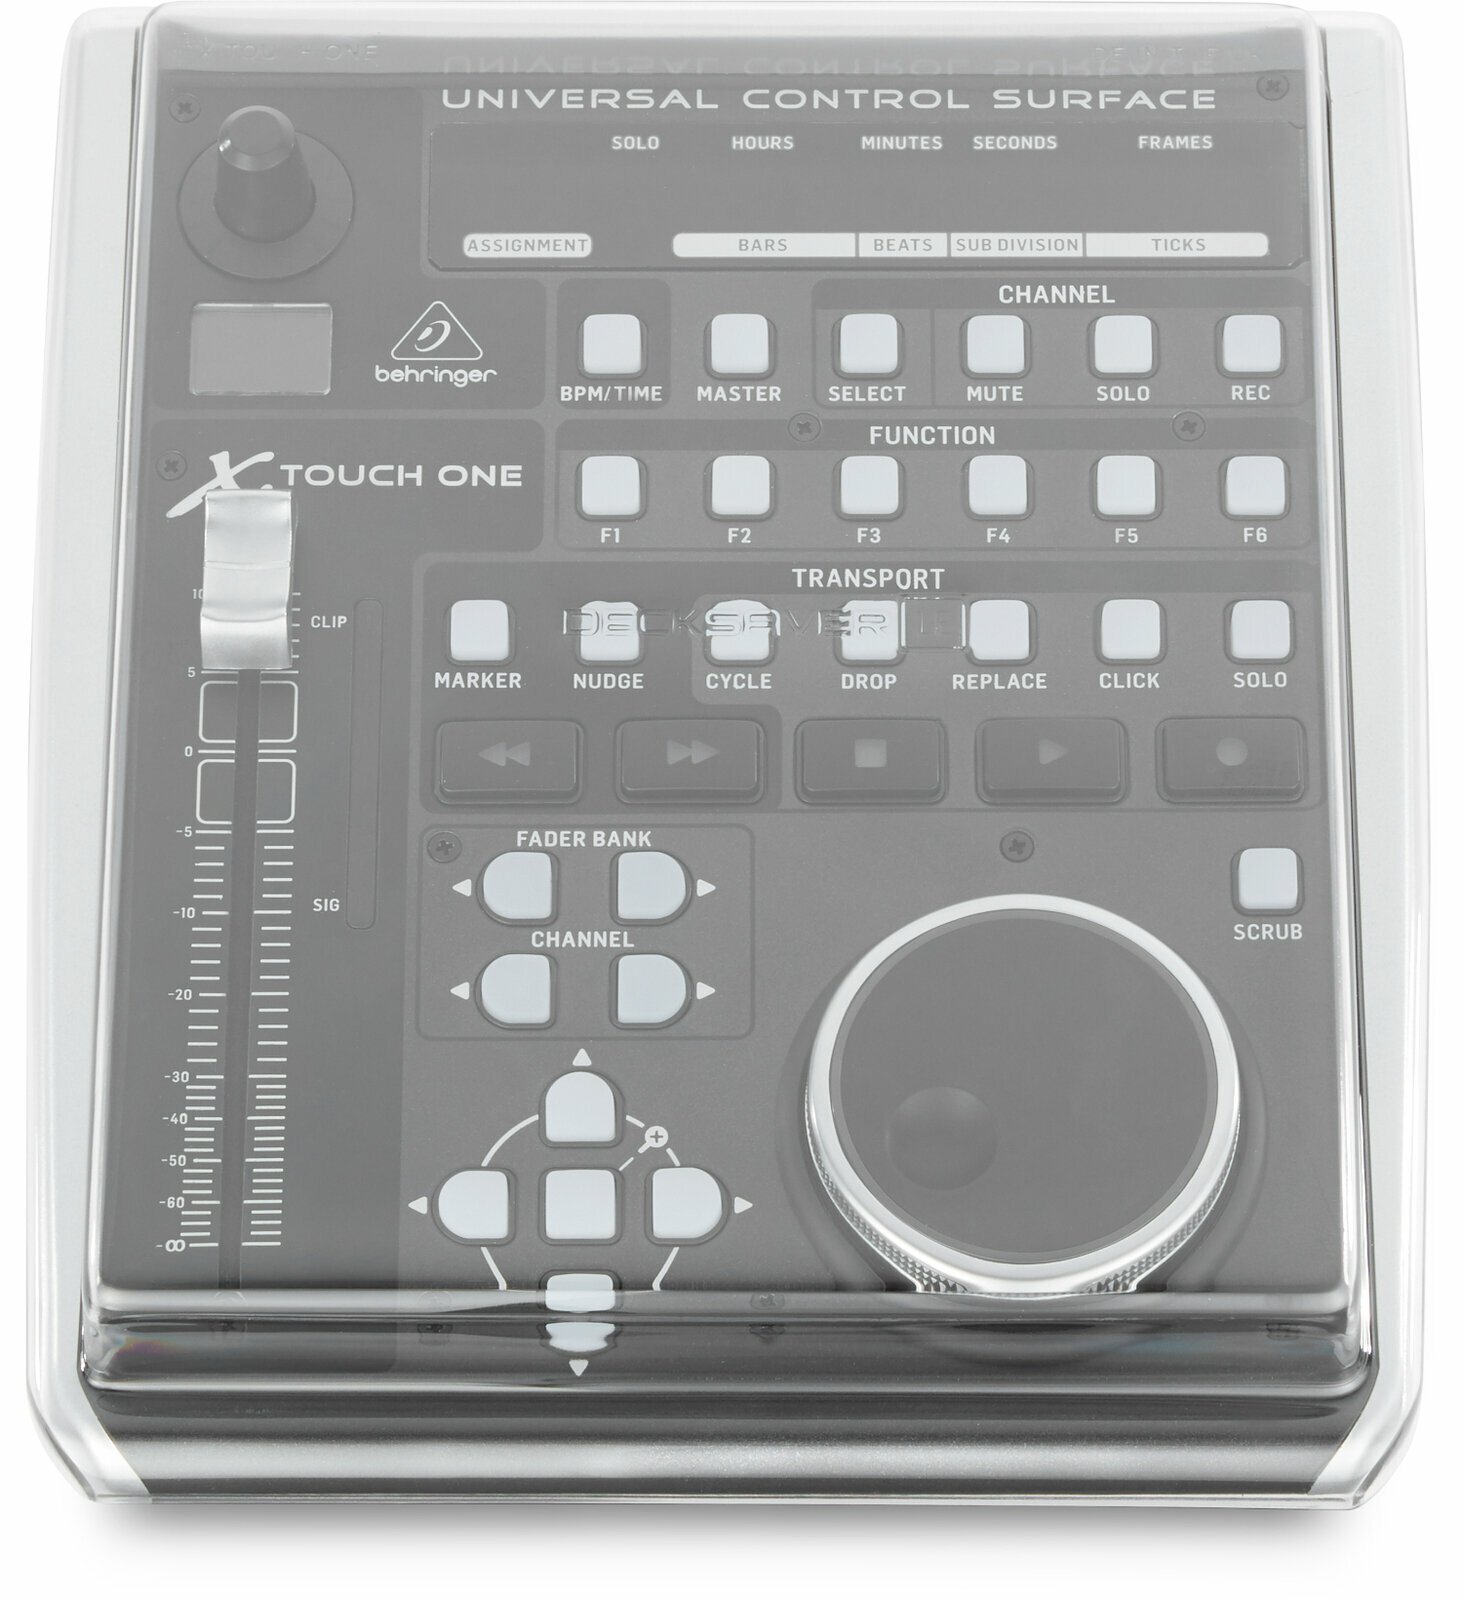 Tasche / Koffer für Audiogeräte Decksaver LE Behringer X-Touch One